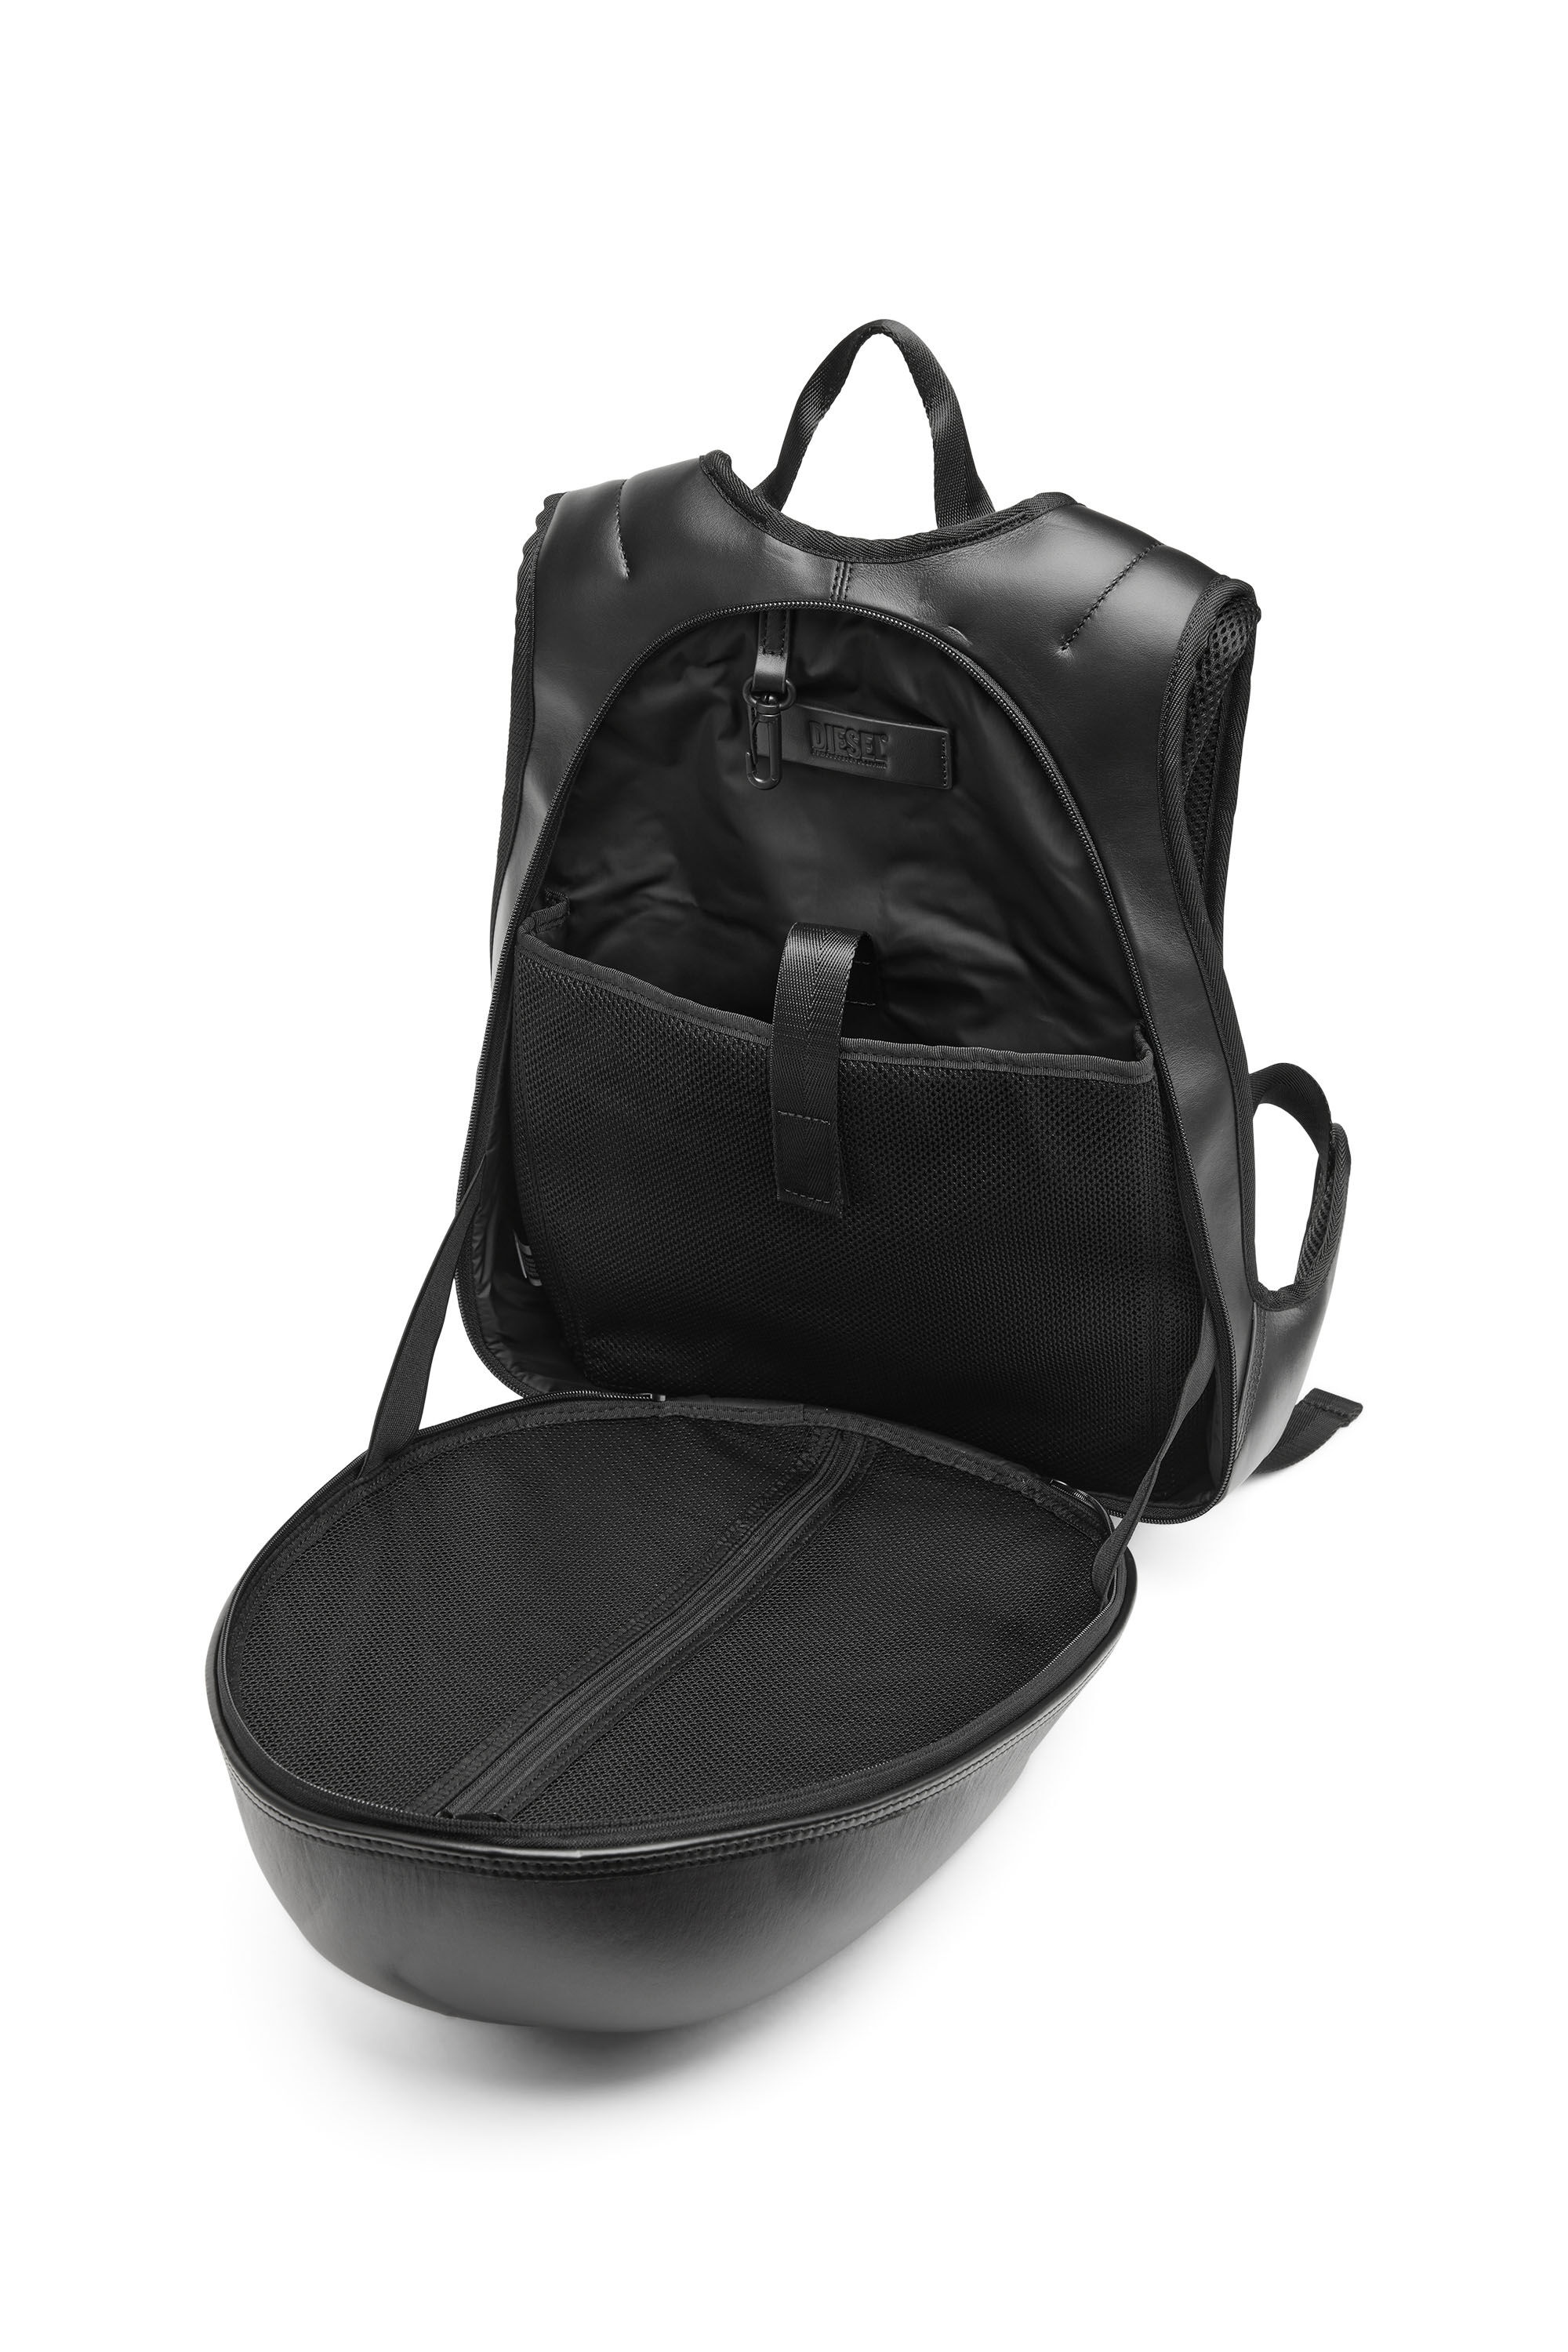 Diesel - 1DR-POD BACKPACK, Man 1DR-Pod Backpack - Hard shell leather backpack in Black - Image 2